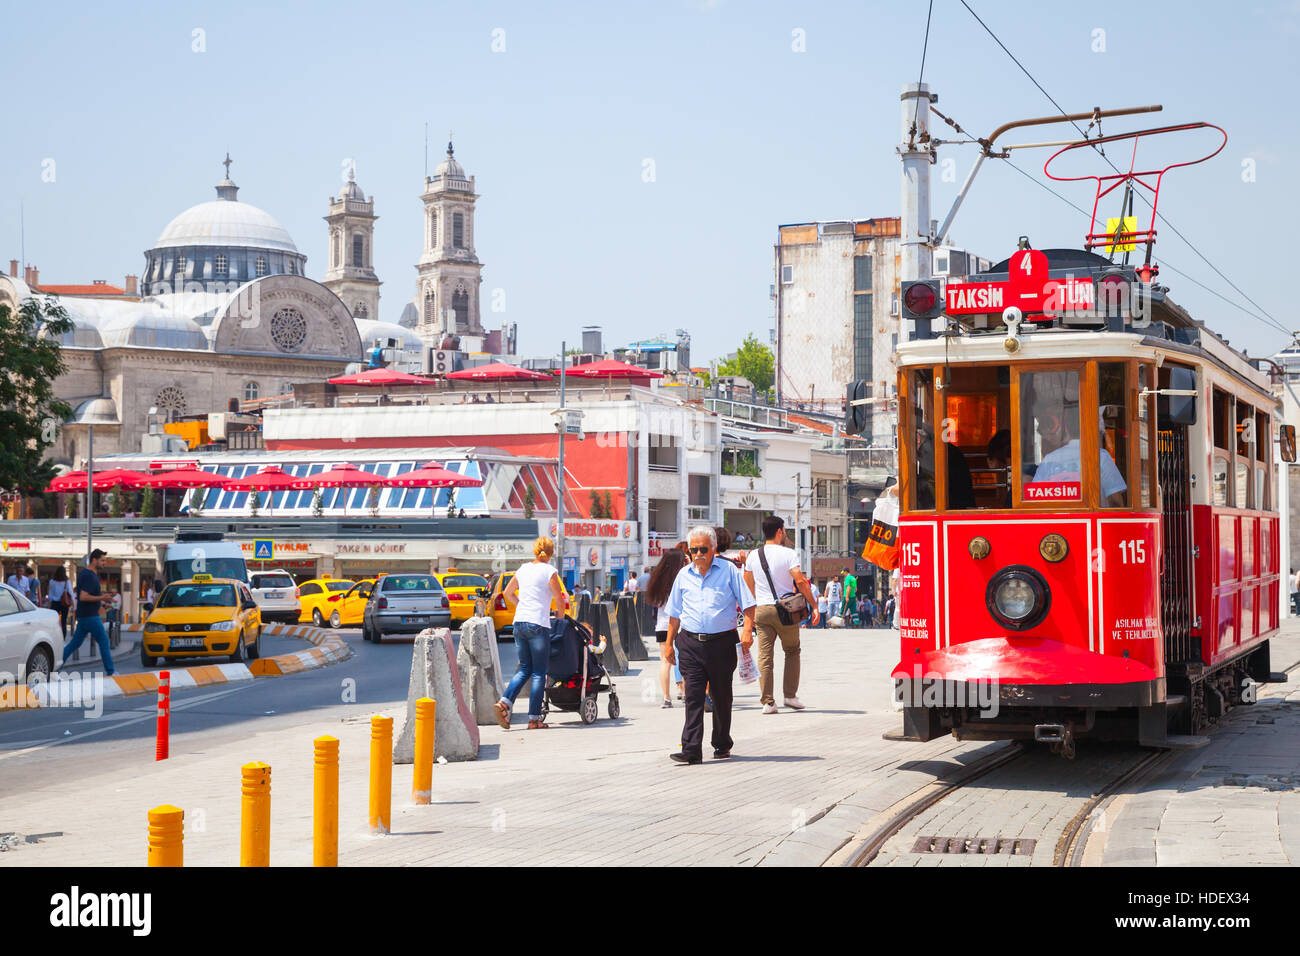 Istanbul, Türkei - 1. Juli 2016: Vintage rote Straßenbahn fährt am Taksim-Platz in Istanbul, gewöhnliche Menschen in der Nähe zu Fuß. Beliebte öffentliche Verkehrsmittel Stockfoto